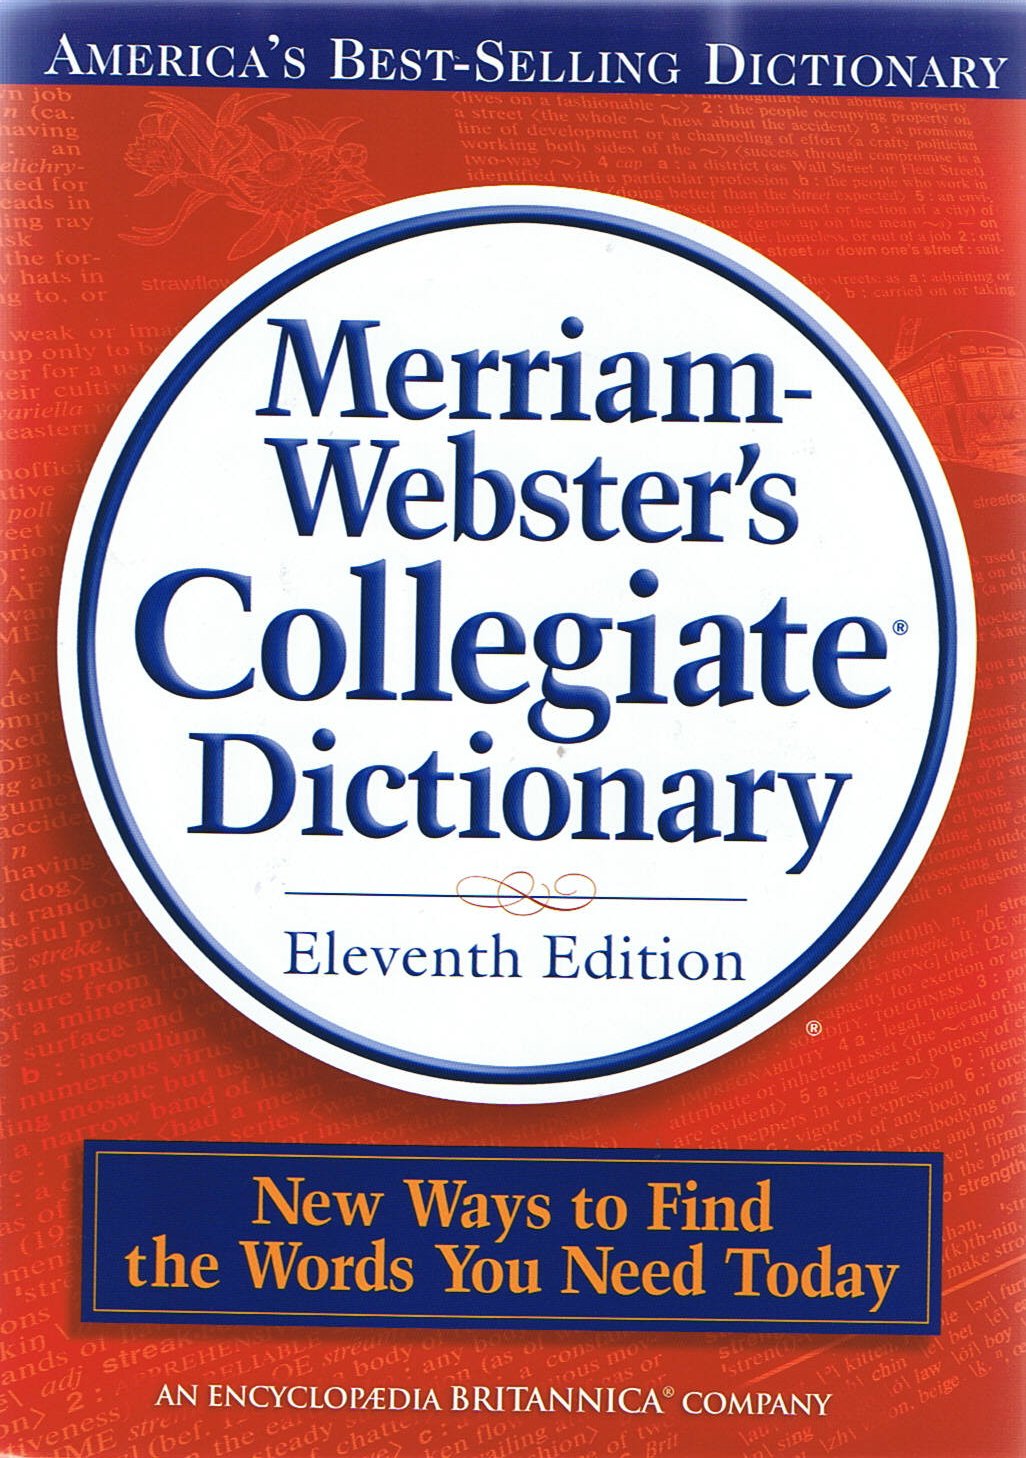 http://1.bp.blogspot.com/-50CVBBYcVws/Tl3AaDylnSI/AAAAAAAAAyg/OjJvr7Dx4v4/s1600/Merriam+Webster+Dictionary.jpg